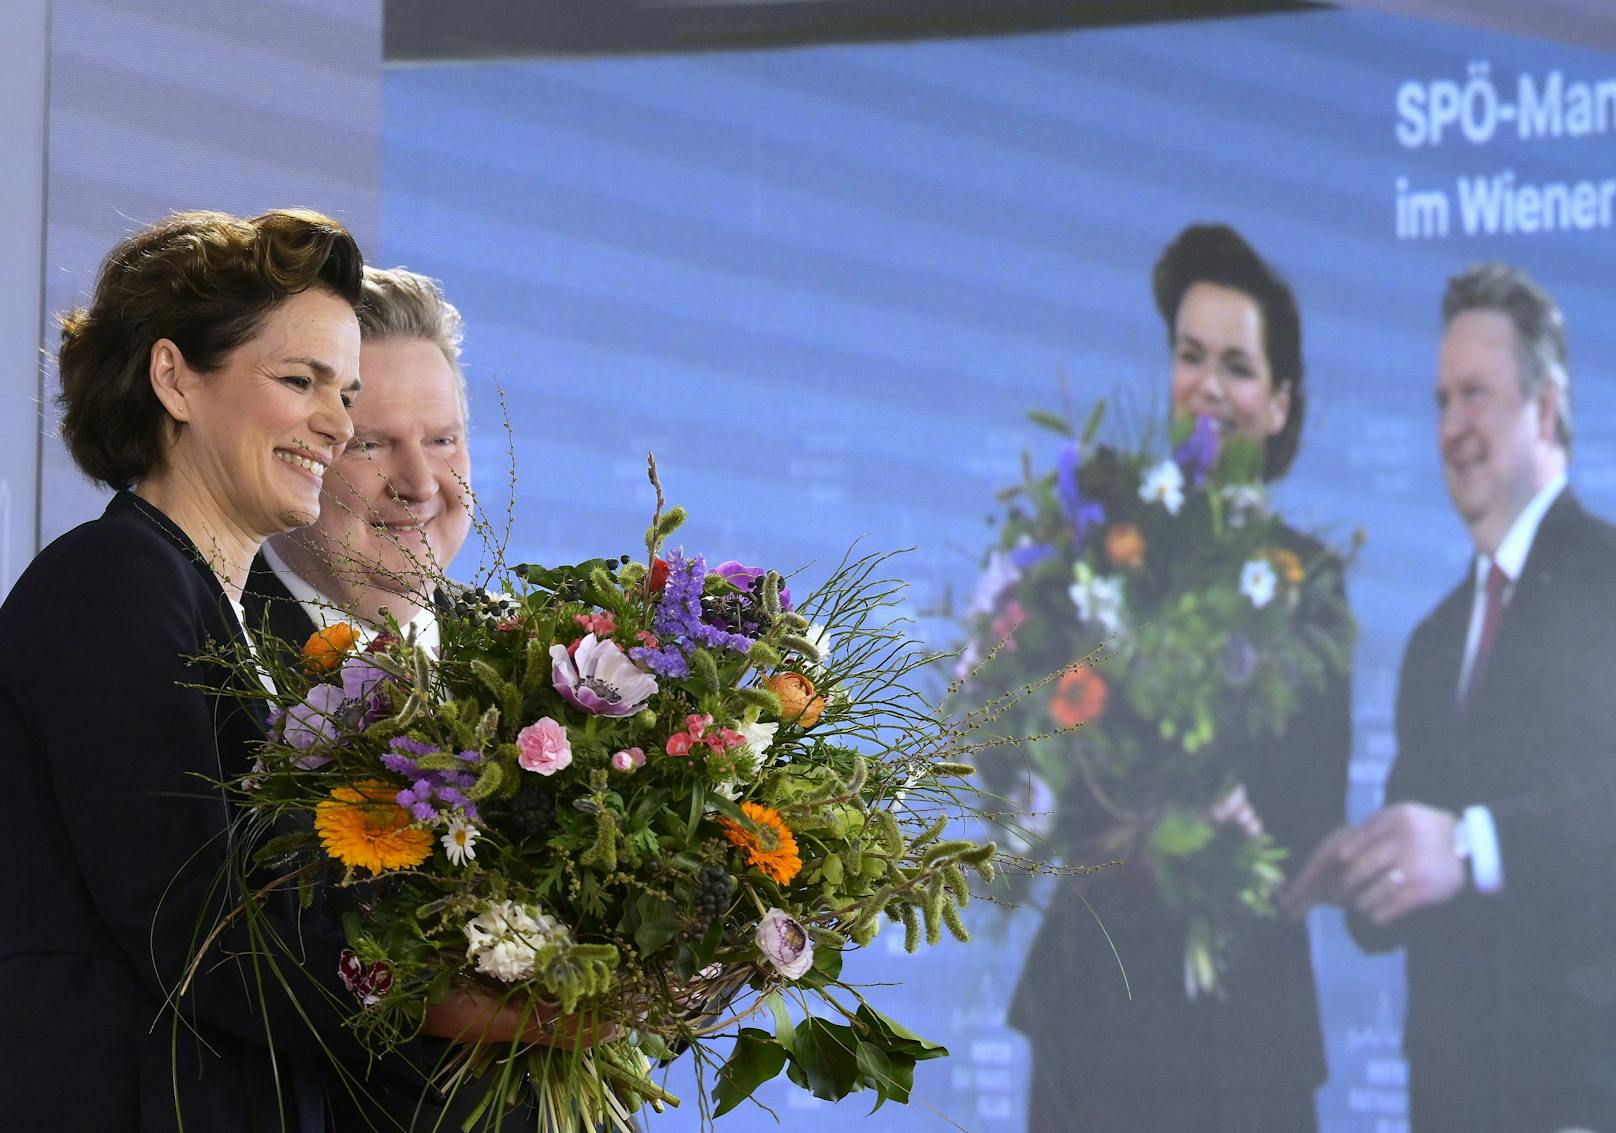 Für die Parteivorsitzende gab es zur Begrüßung einen riesigen Blumenstrauß.